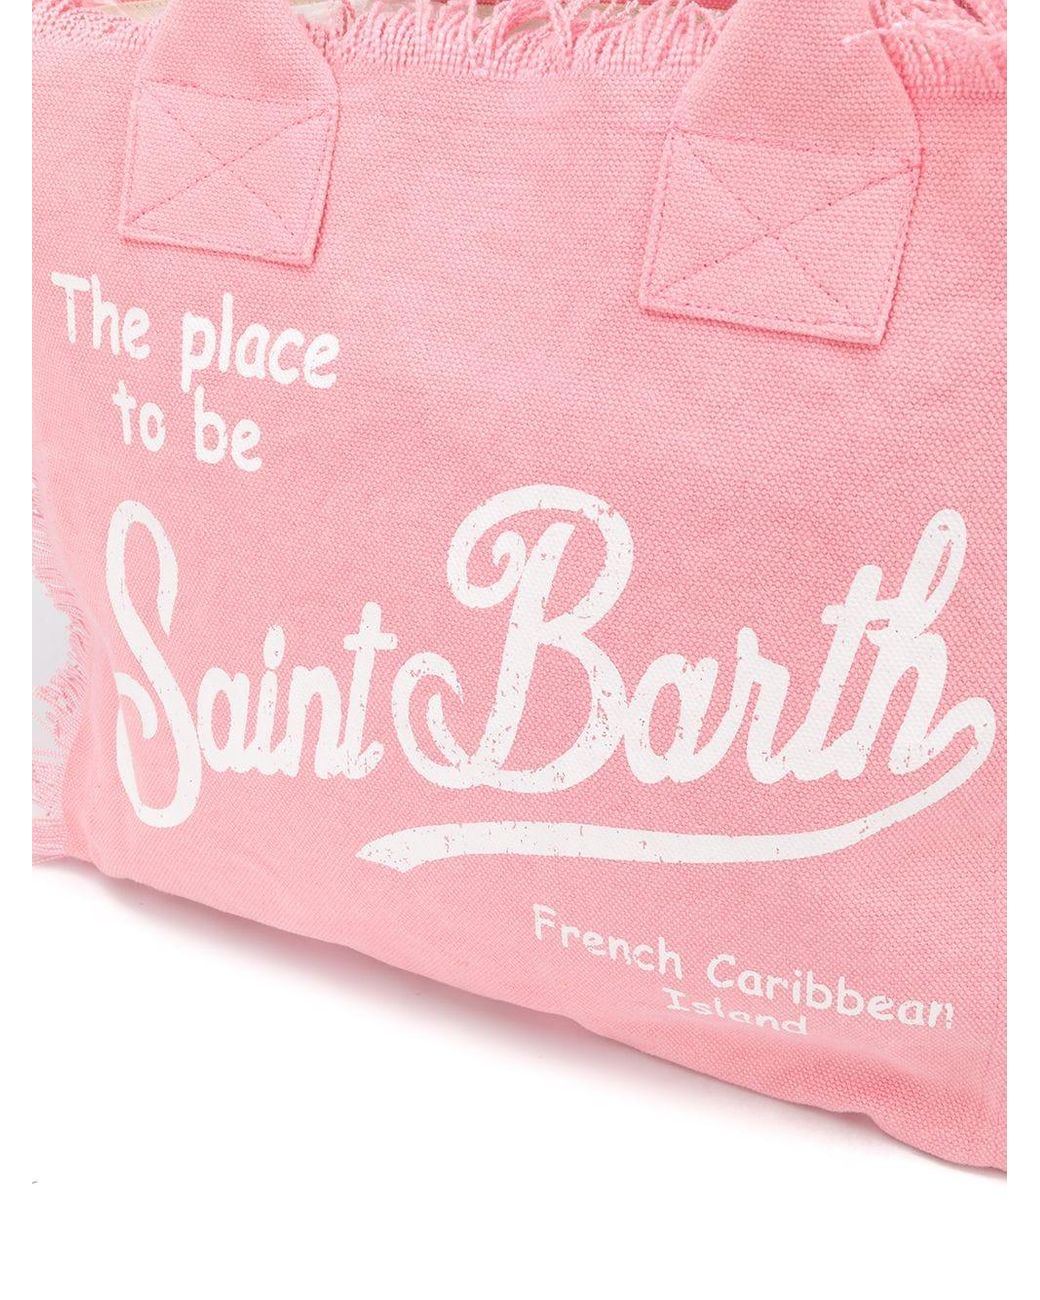 MC2 Saint Barth Kids logo-print Beach Bag - Farfetch